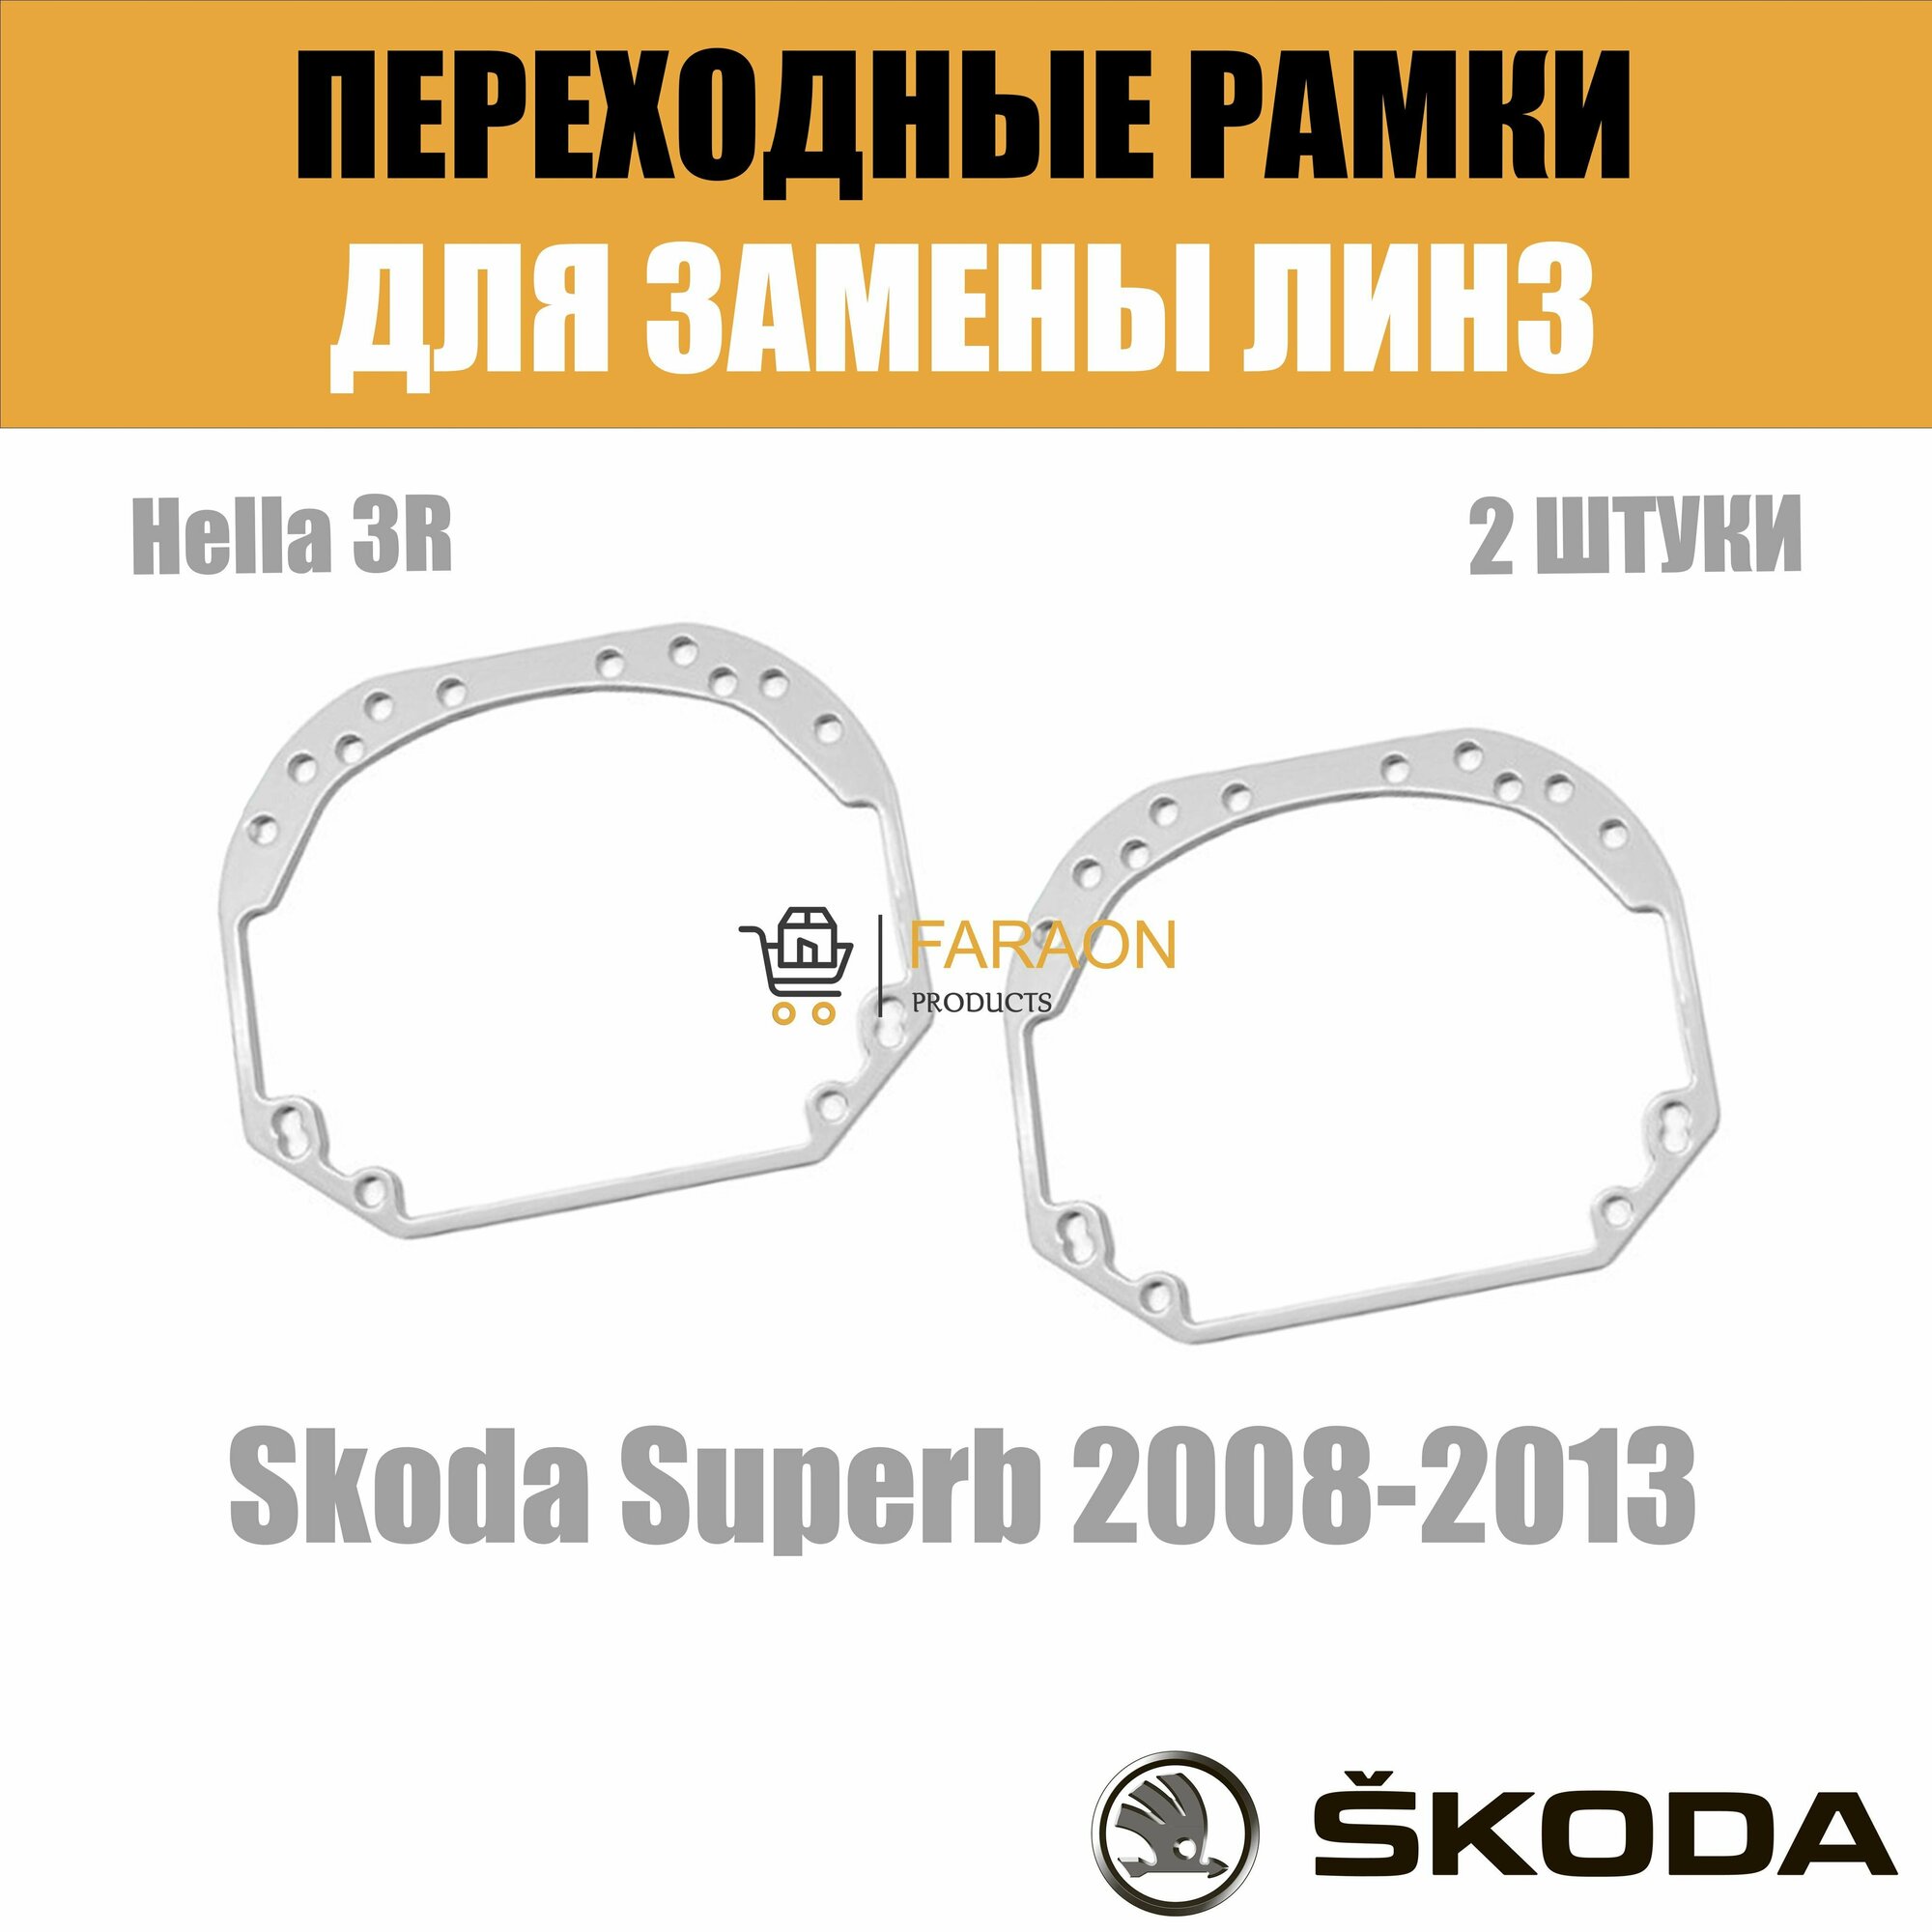 Переходные рамки для замены линз №1 на Skoda Superb 2008-2013 Крепление Hella 3R